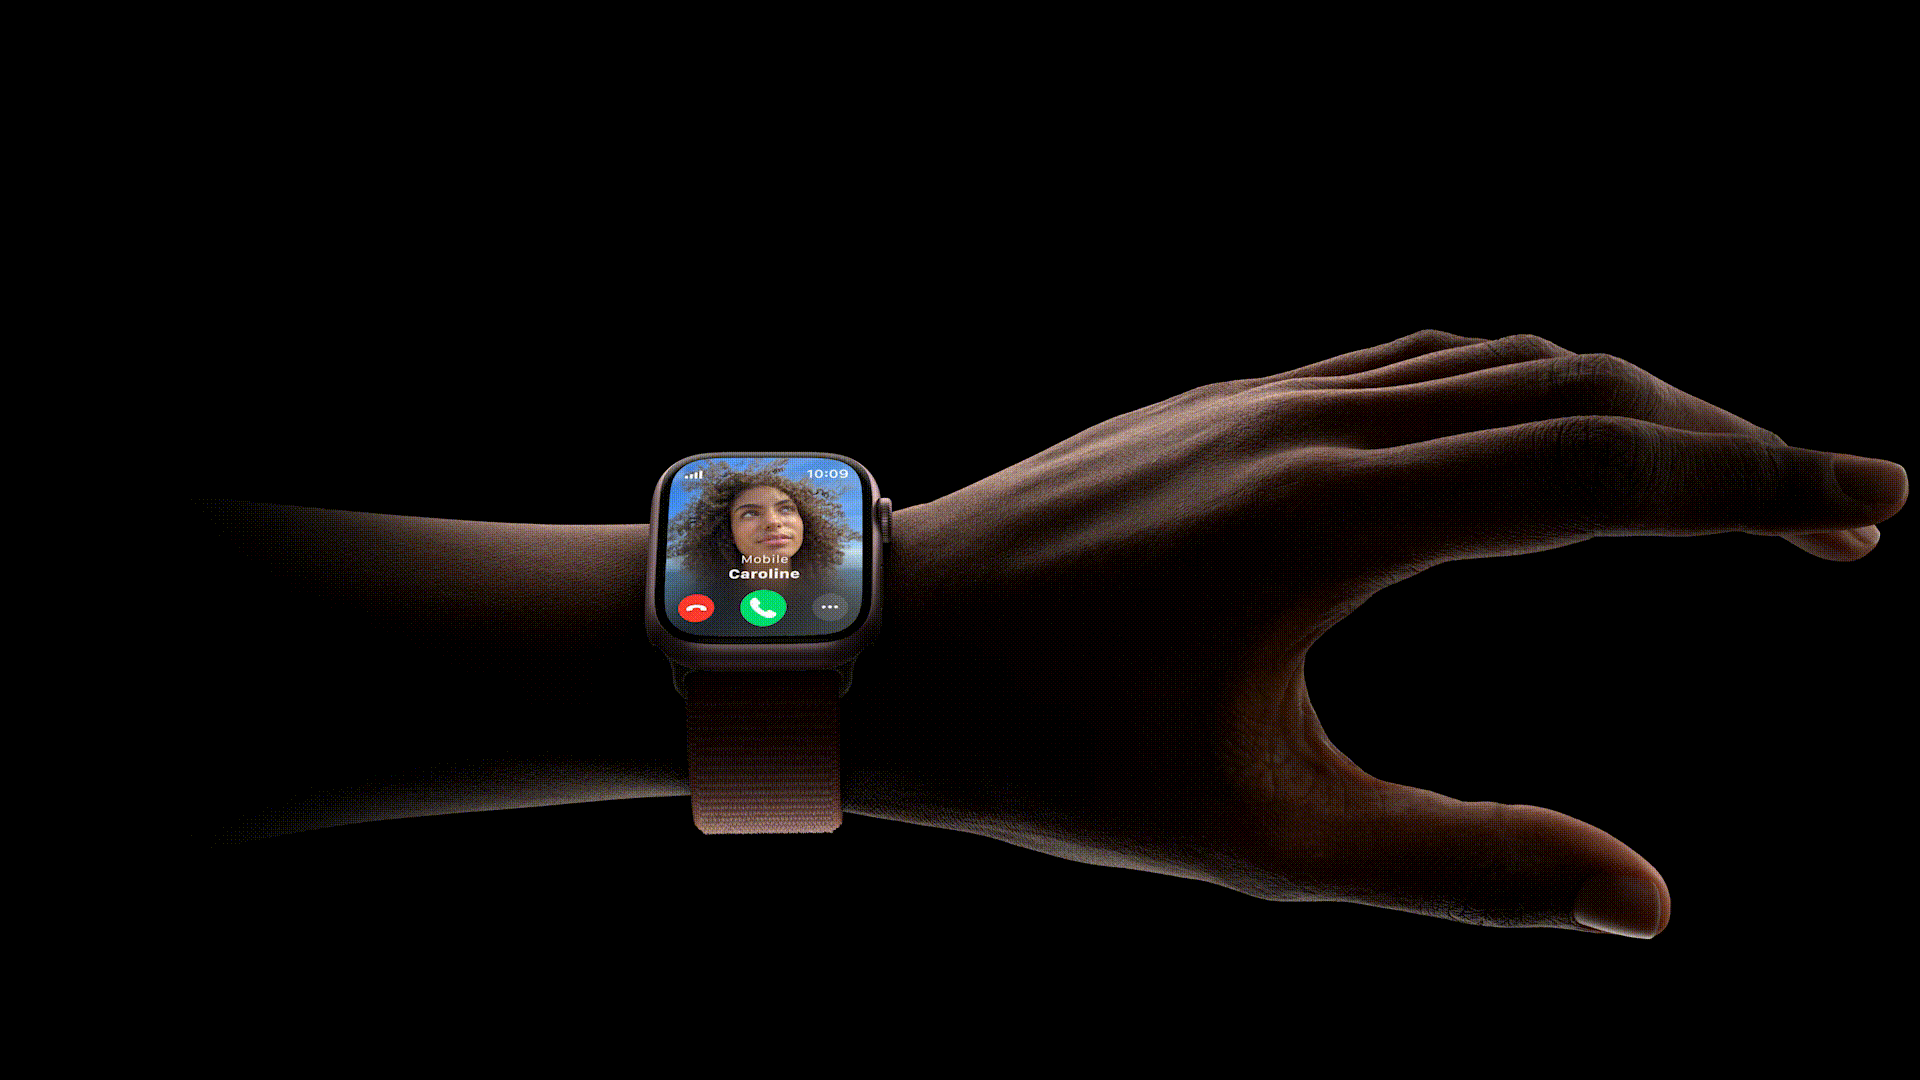 Bằng iPhone và Apple Watch mới, Apple đang mang lại hình hài cho AI như thế nào? - Ảnh 2.